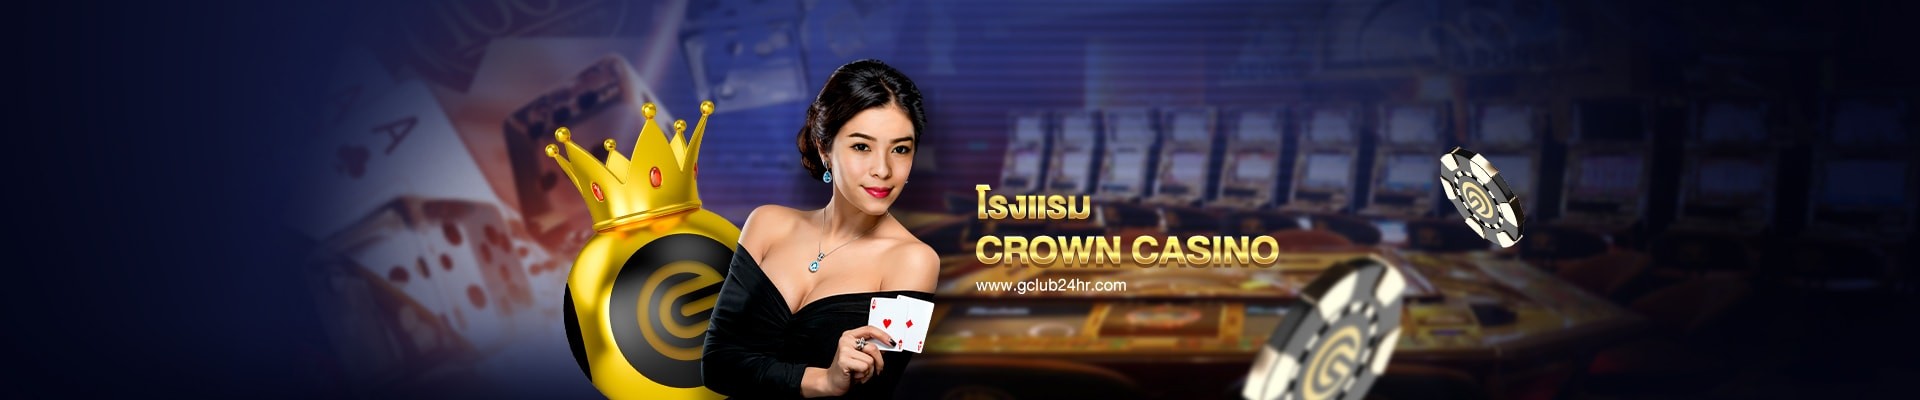 gclub24hr_casino_online_crown_casino_hotel